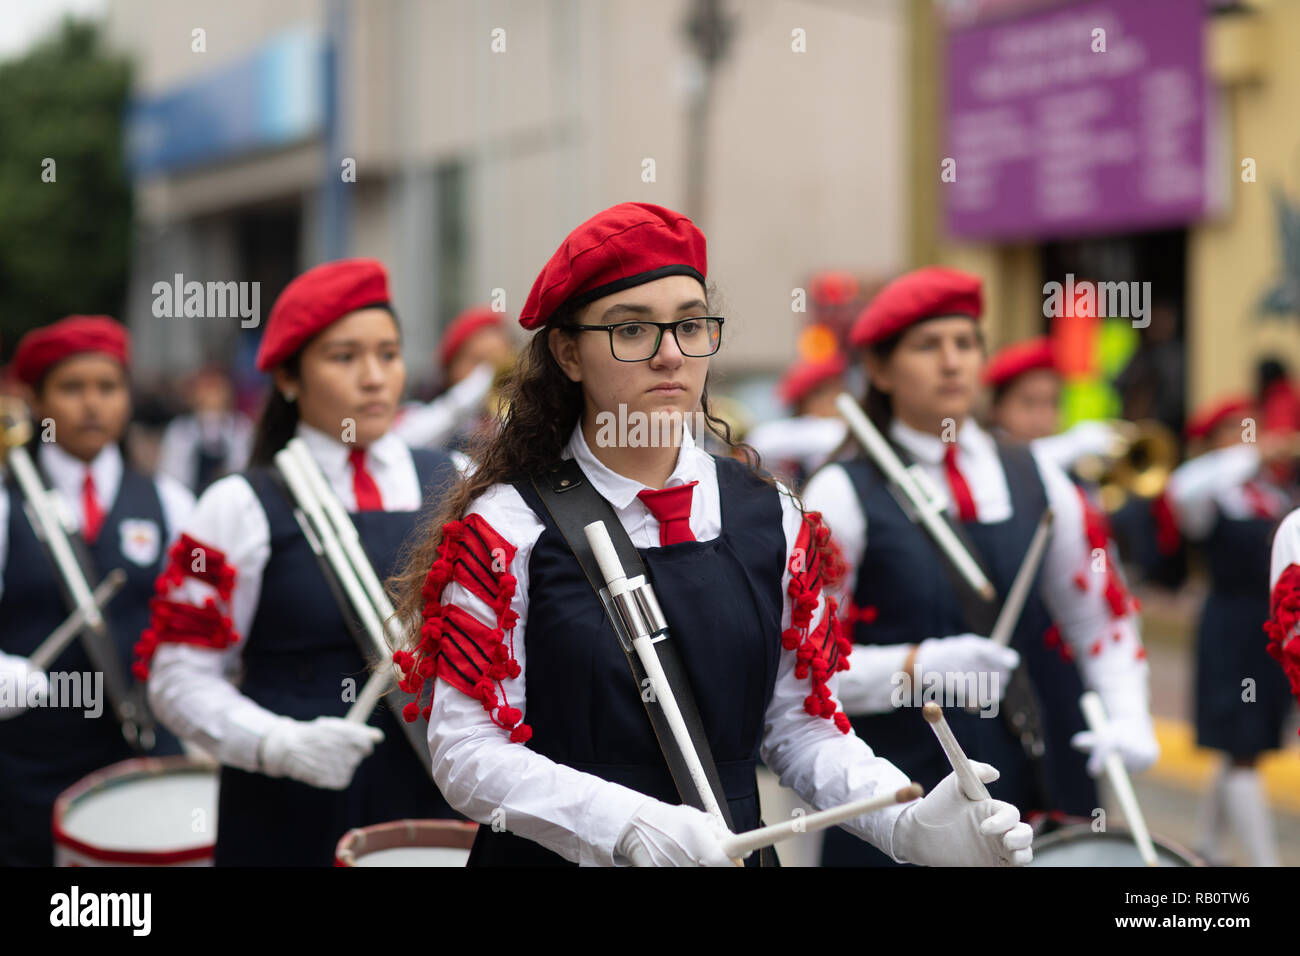 Matamoros, Tamaulipas, Mexico - November 20, 2018: The November 20 Parade, Marching Band with military Style uniform performing at the parade Stock Photo